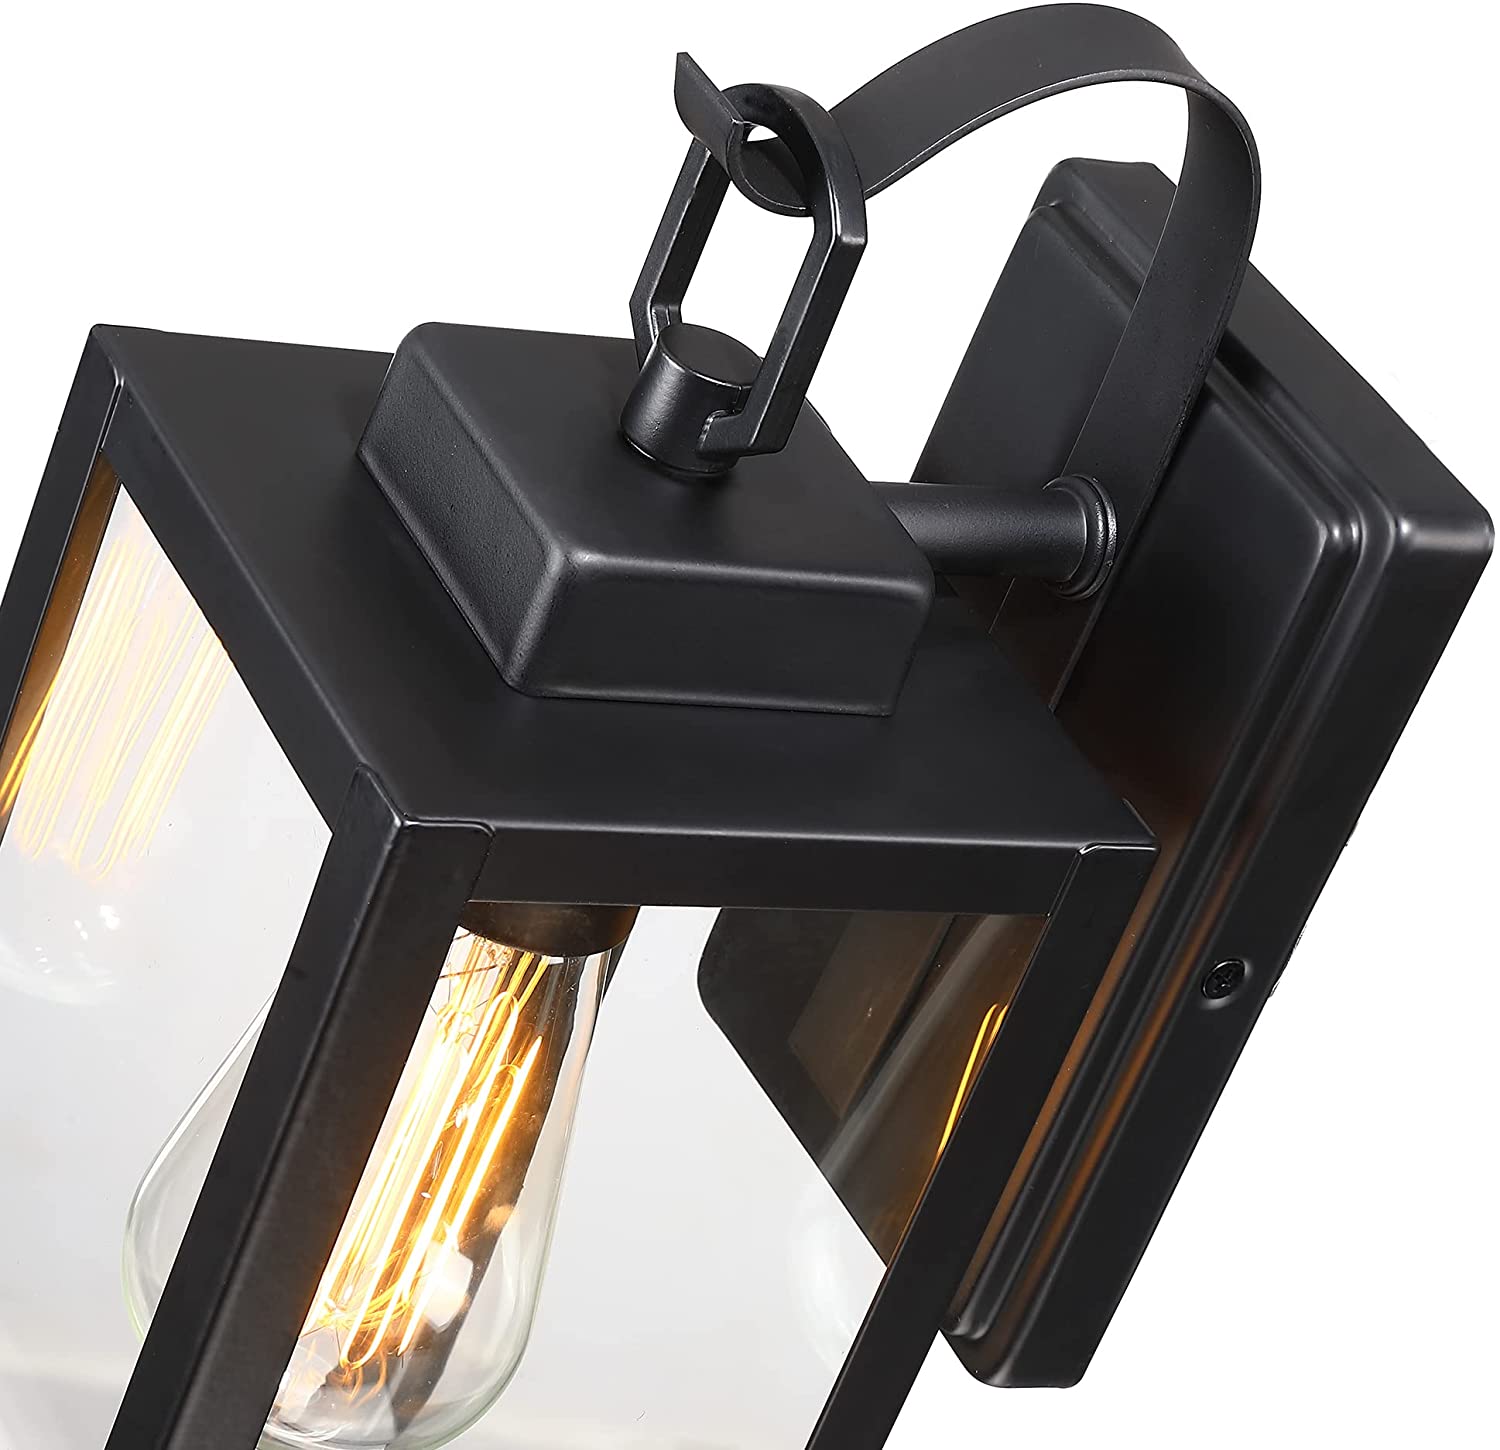 1-Light Matte Black Hardwired Outdoor Fixture Wall Lantern Light